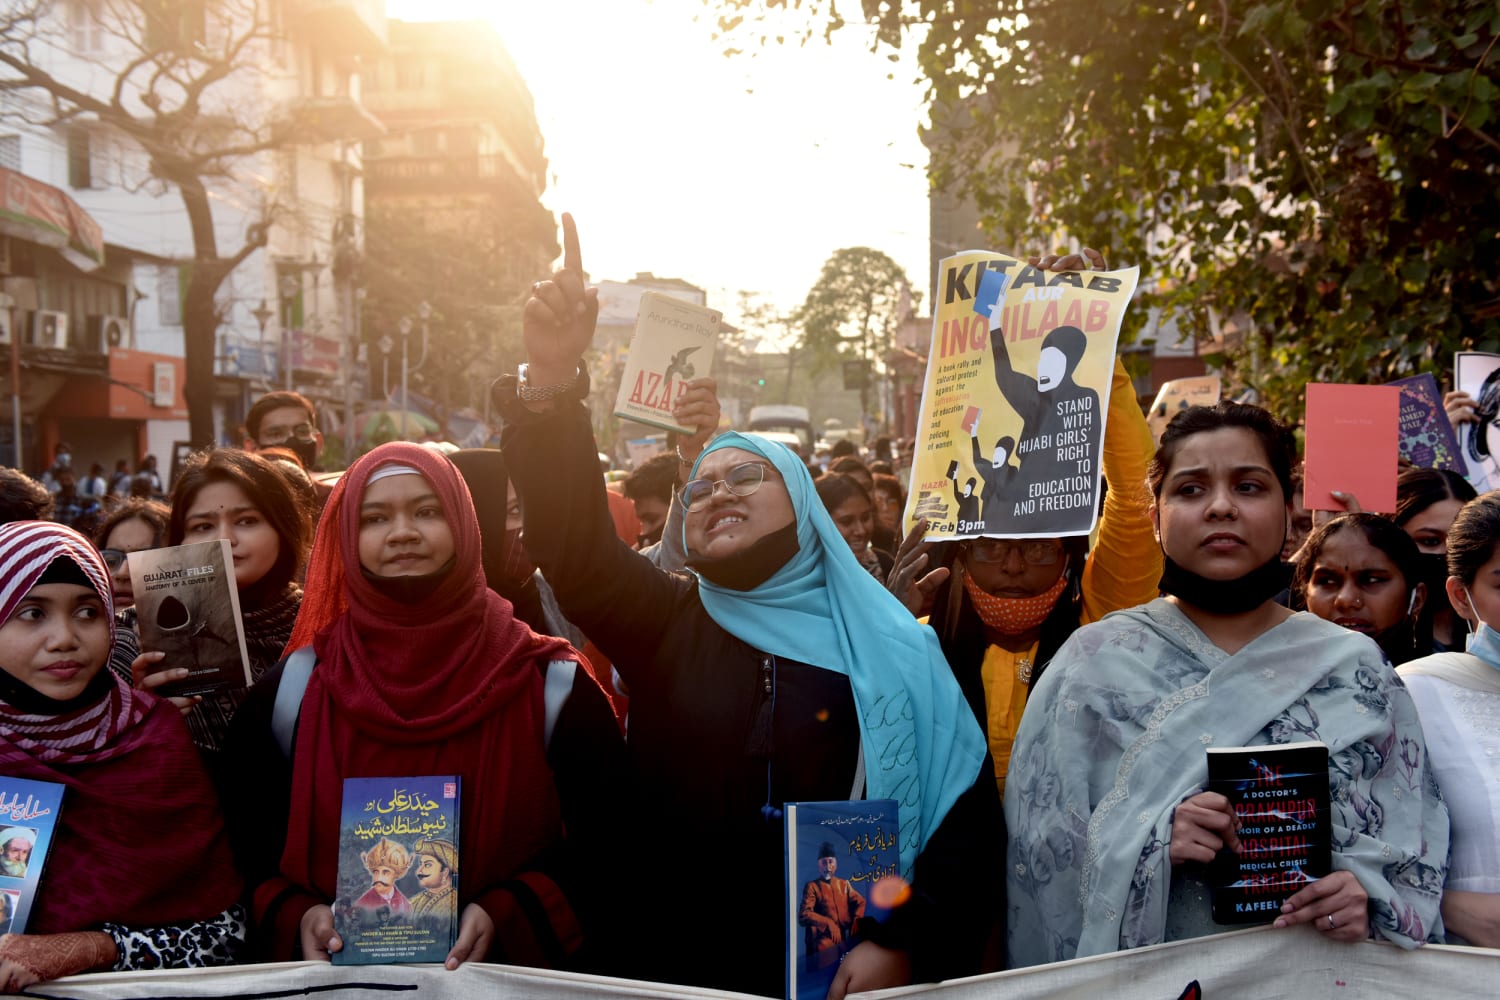 Kolkata Muslim Xxx Video - Muslim women in India protest hijab ban